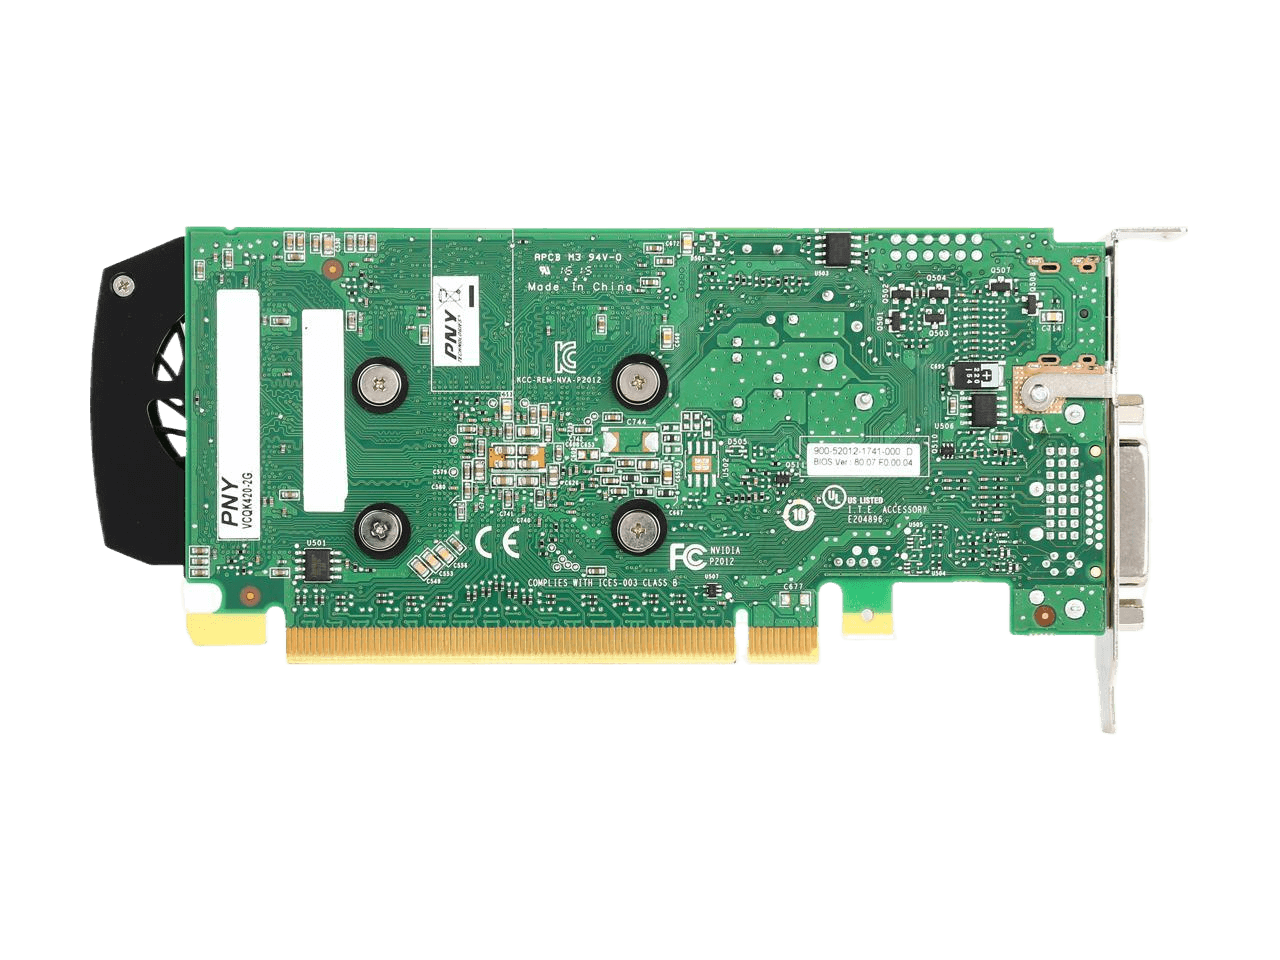 PNY Quadro K420 2GB 128-bit DDR3 PCI Express 2.0 x16 Low Profile Workstation Video Card VCQK420-2GB-PB